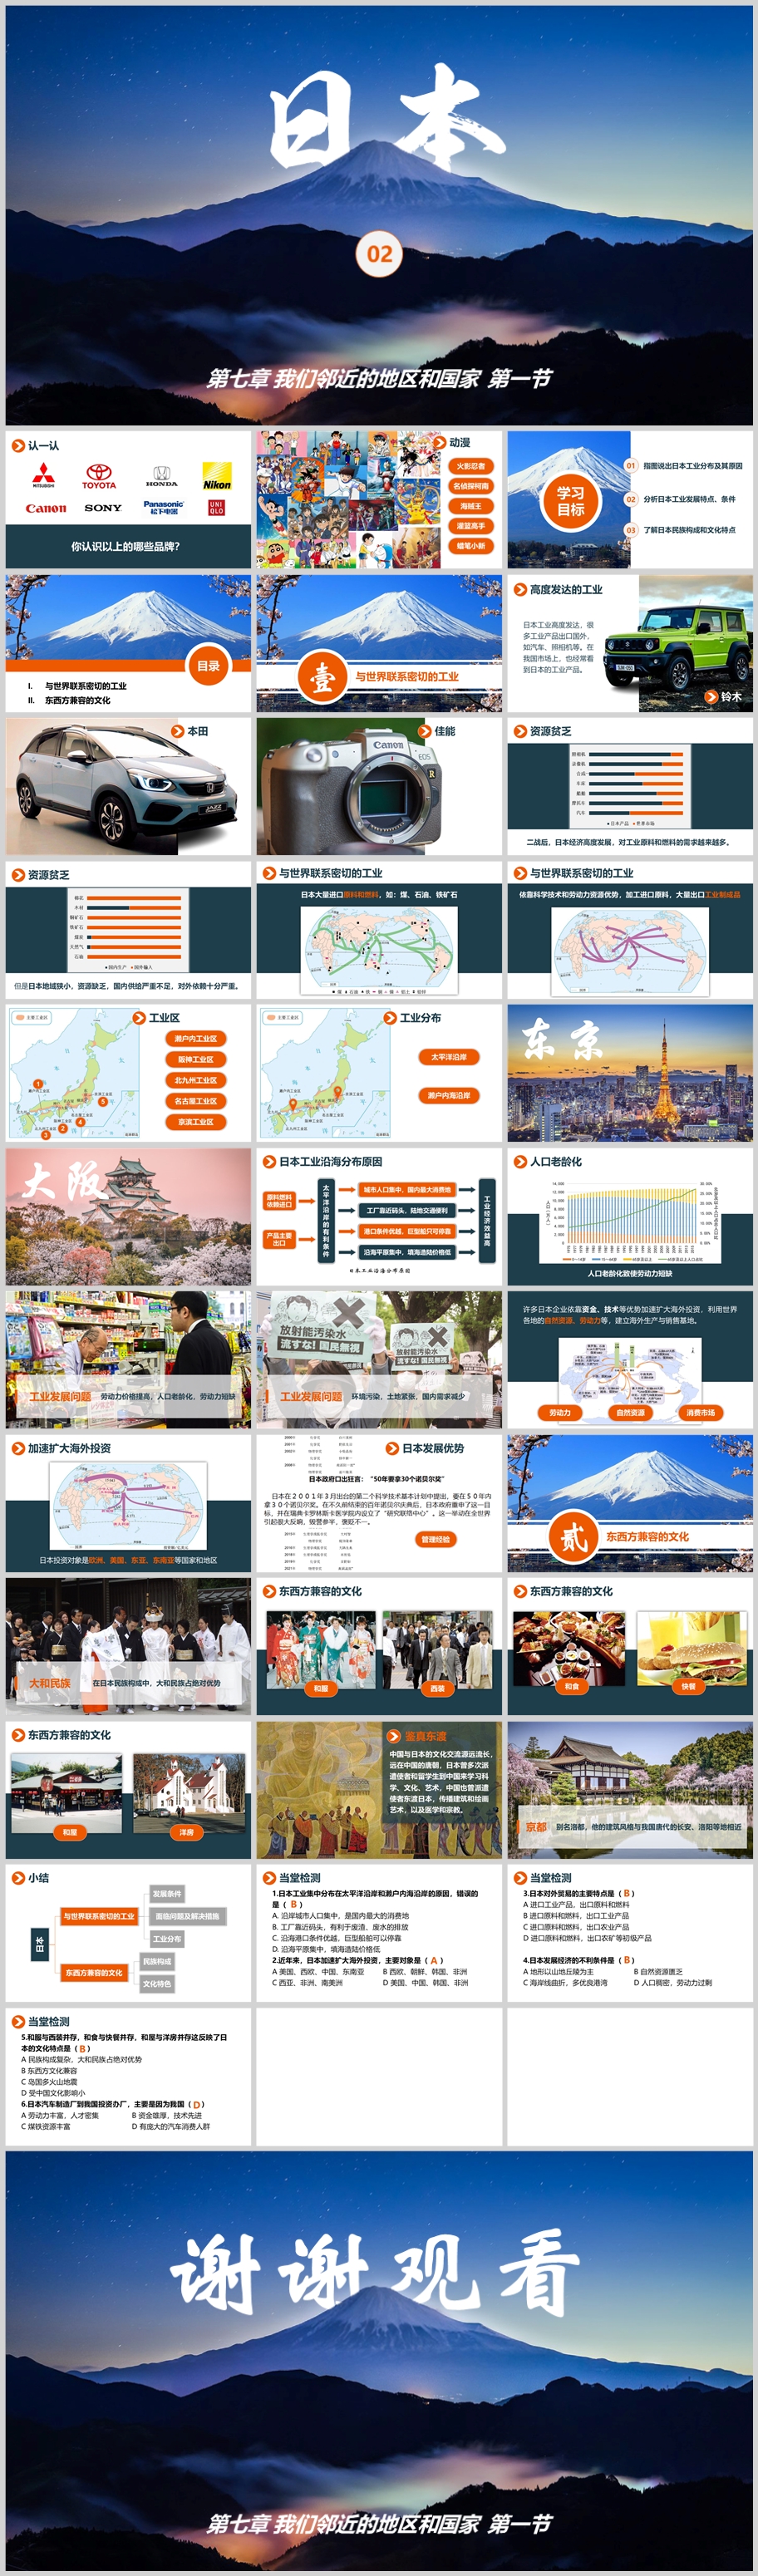 第七章我们邻近的地区和国家 第一节《日本》第2课时 拼图.jpg